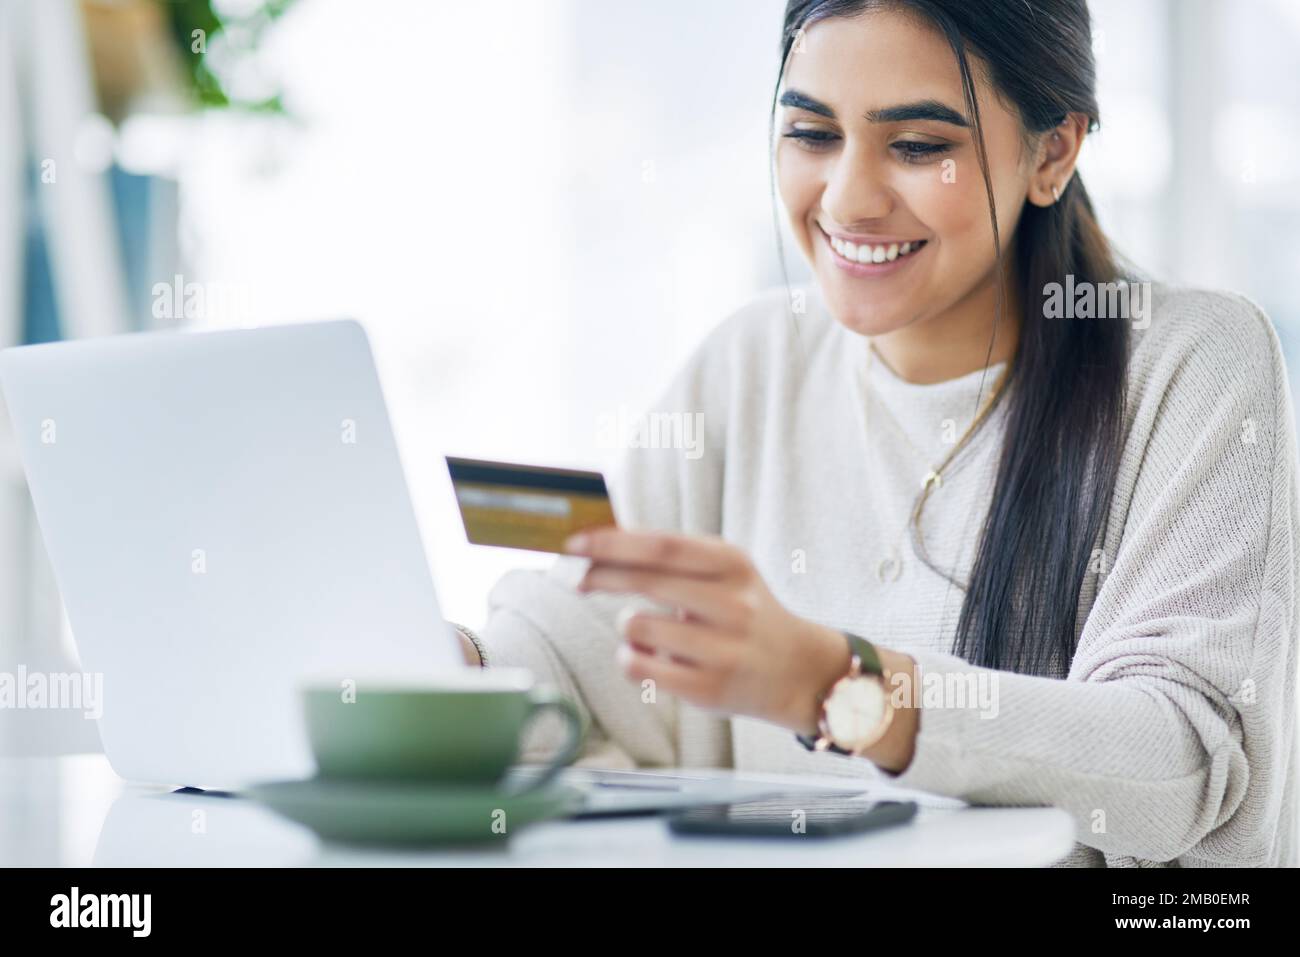 Transférez de l'argent rapidement quand vous en avez besoin. une jeune femme d'affaires utilisant un ordinateur portable et une carte de crédit dans un bureau. Banque D'Images